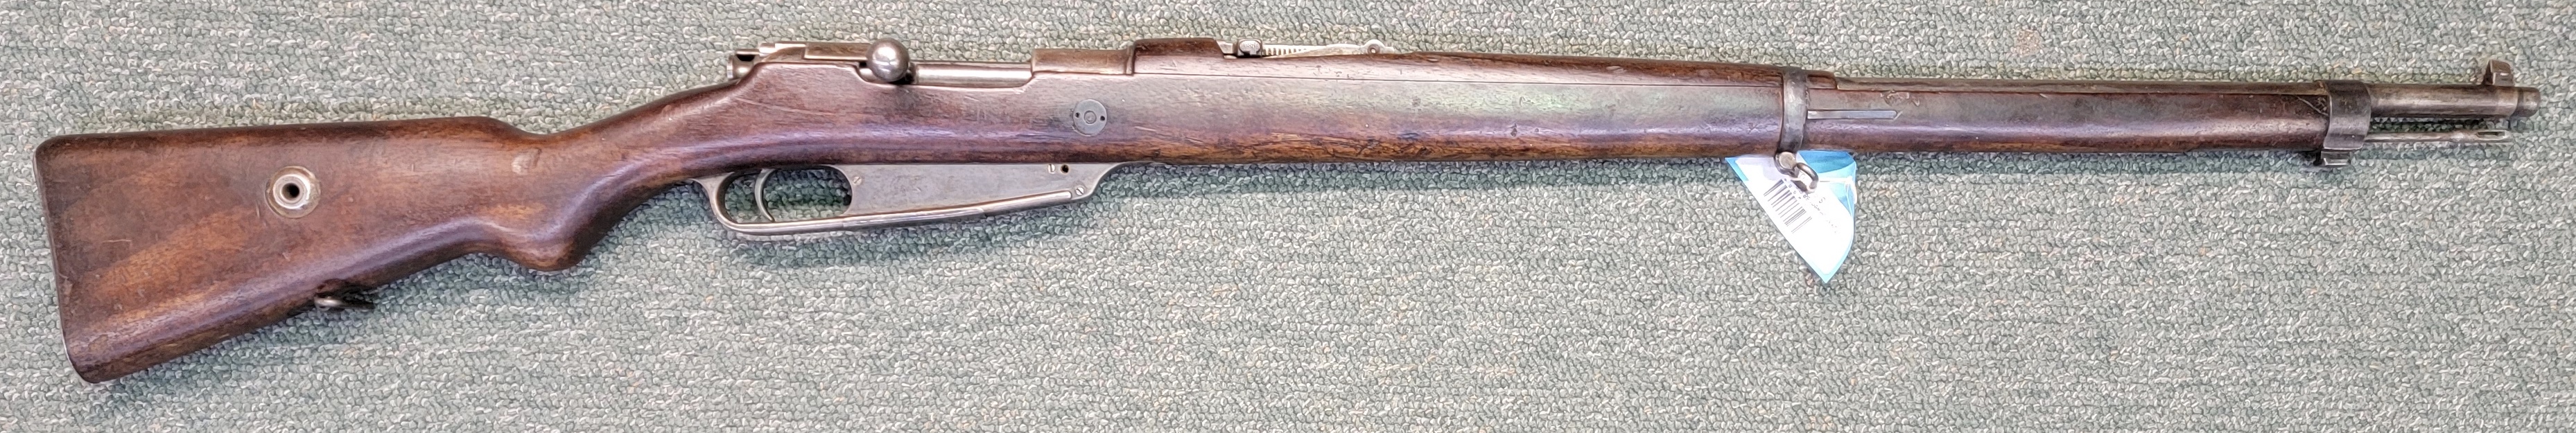 Turkish Gewehr 88 8mm Mauser